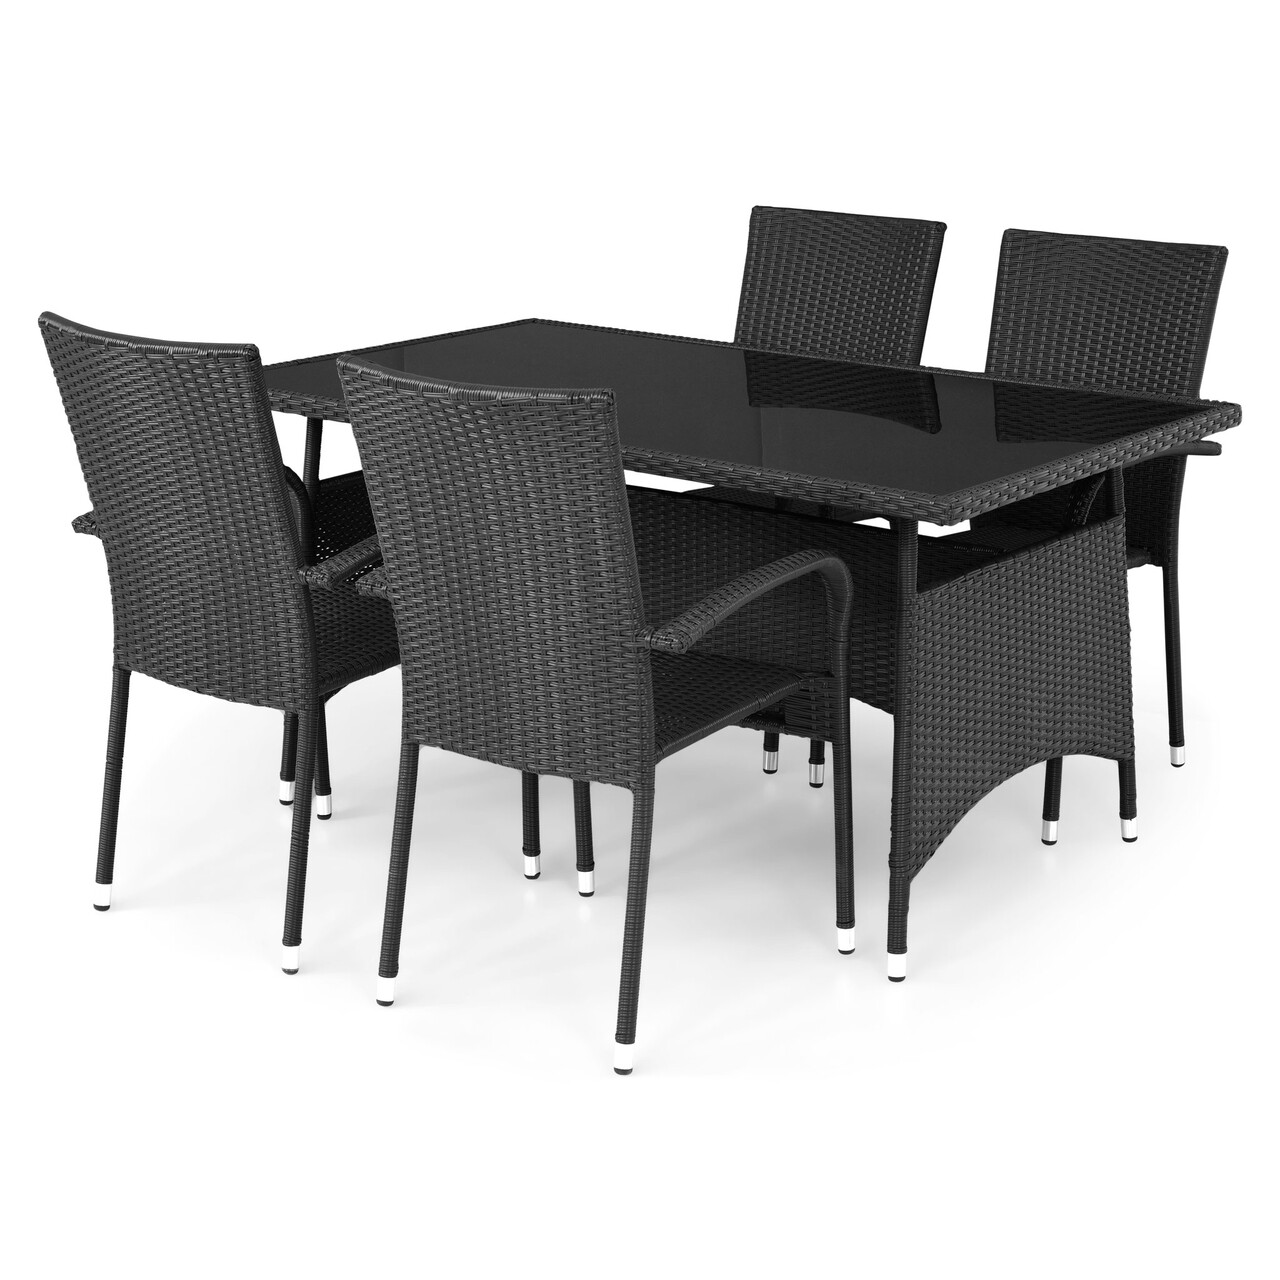 Maison presley kerti/terasz szett, asztal+ 4 szék, acél, fekete